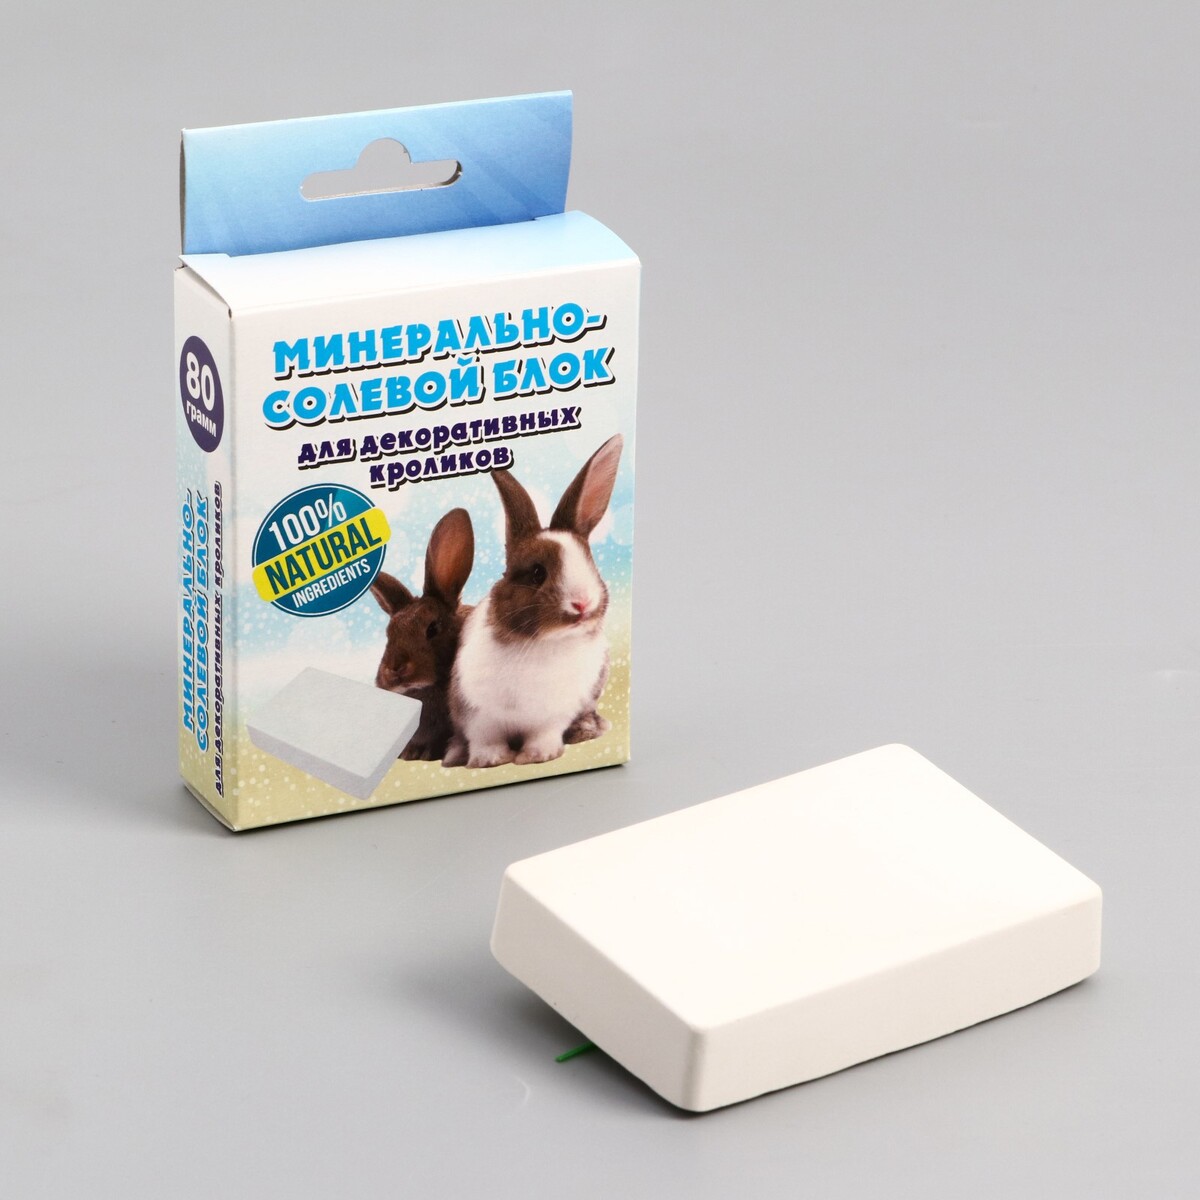 Минерально-солевой блок для декоративных кроликов, 80 гр болезни кроликов мпвв шевченко